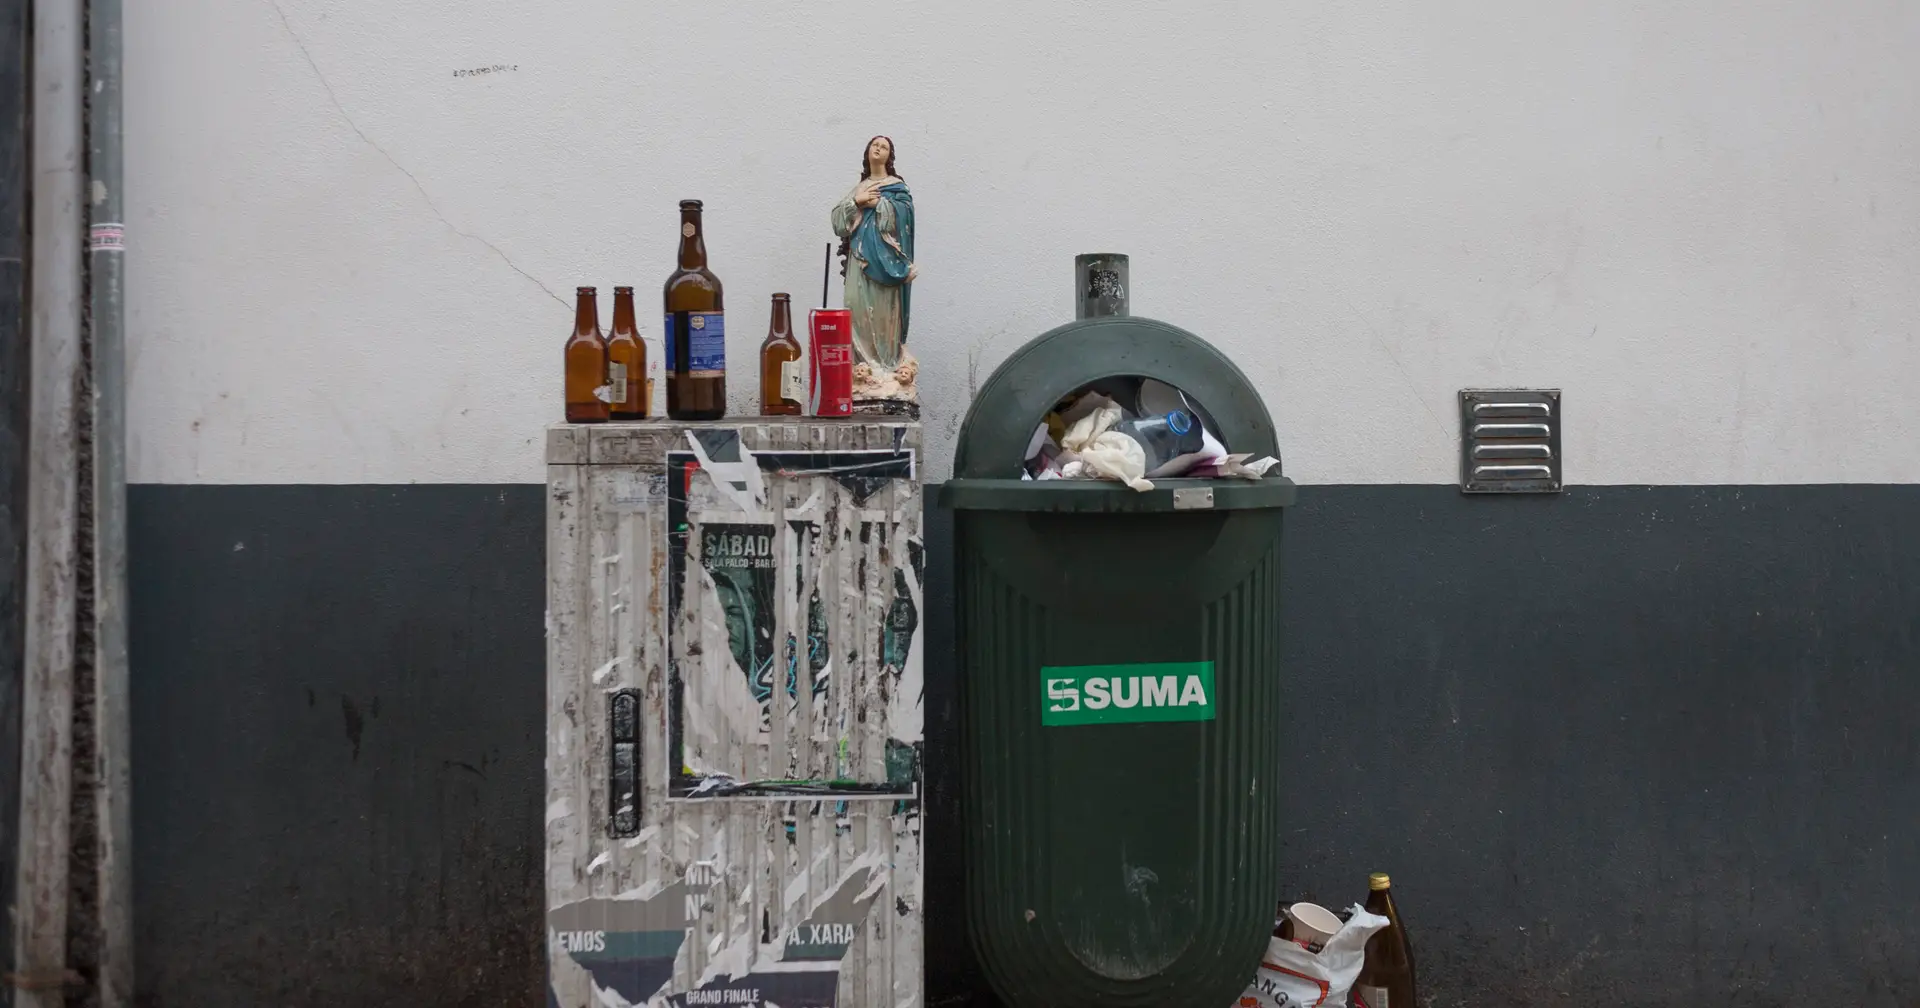 Lisboa: a partir das 23h59 de segunda-feira, o serviço de recolha de lixo vai ser “afetado” devido a uma greve